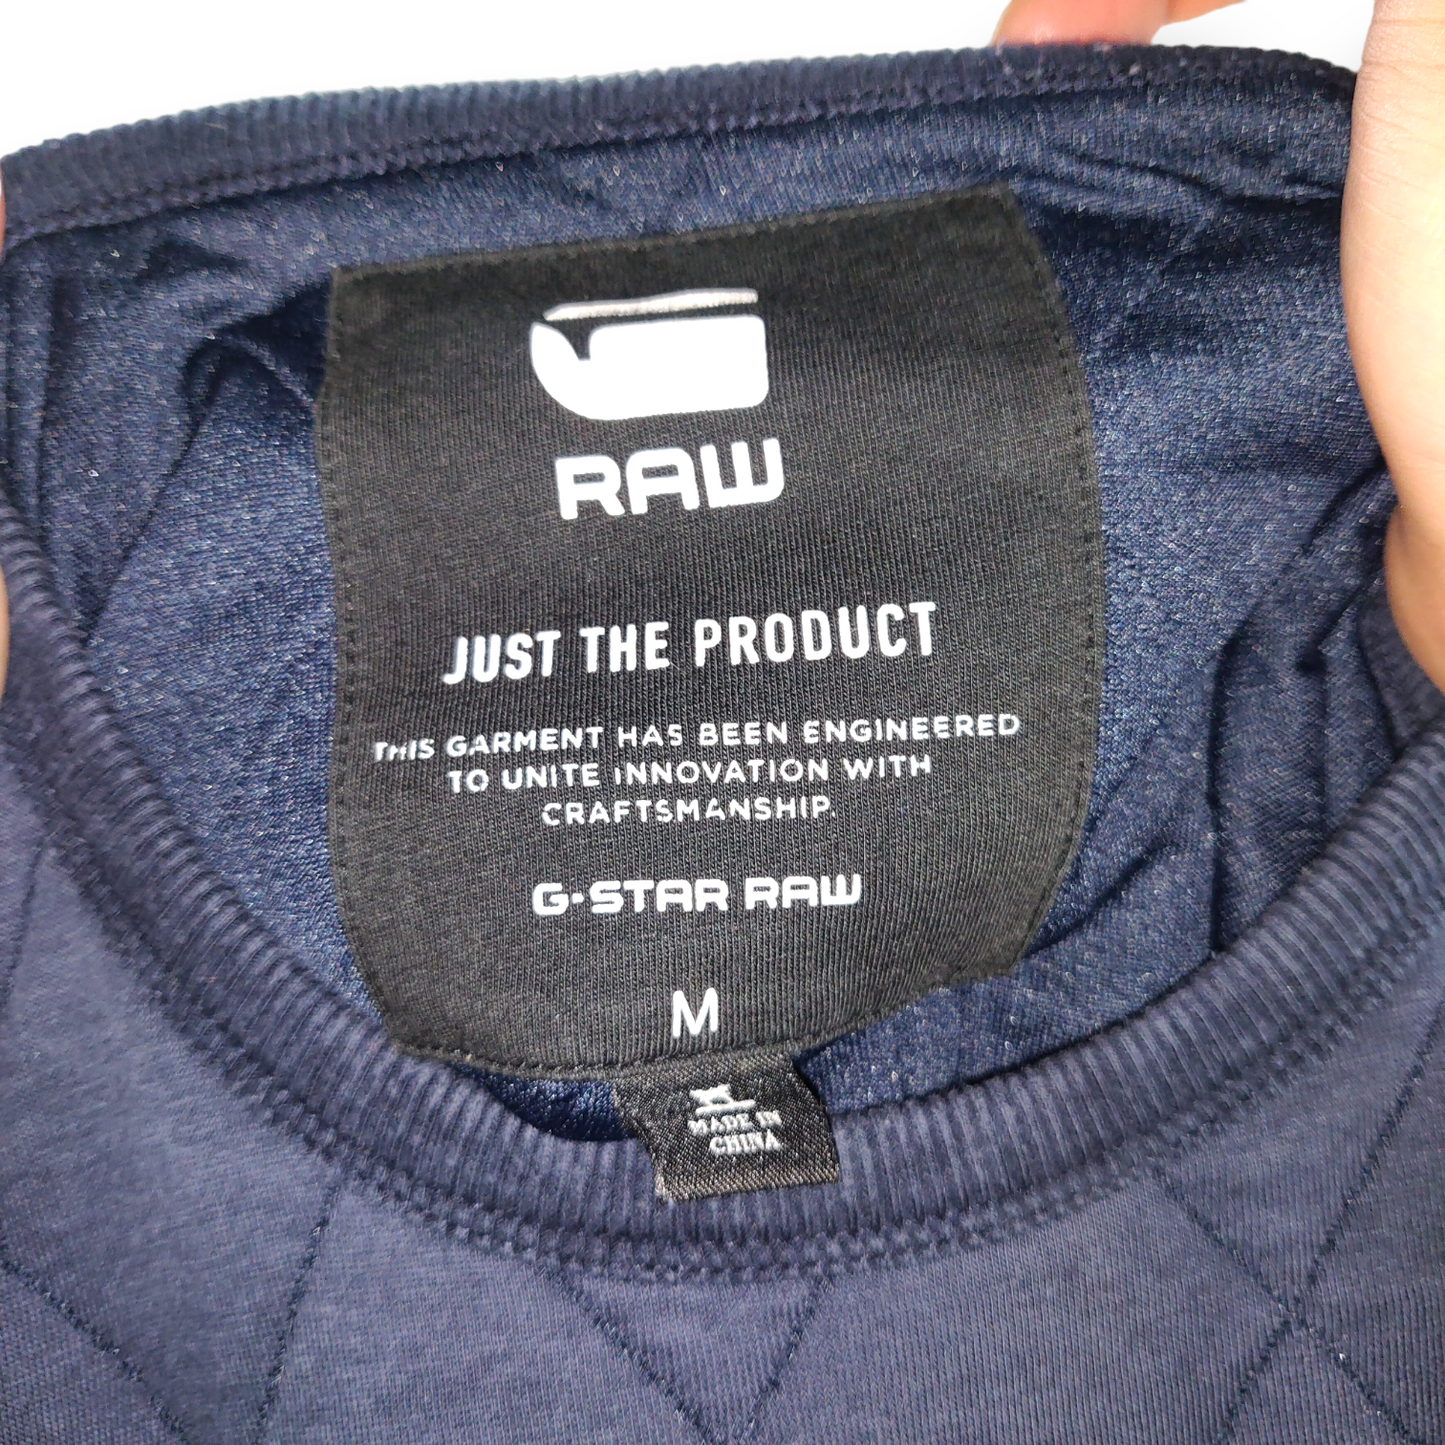 G-Star Raw Blue Quilted Pullover Crew Neck Sweatshirt Jumper Men Size Medium